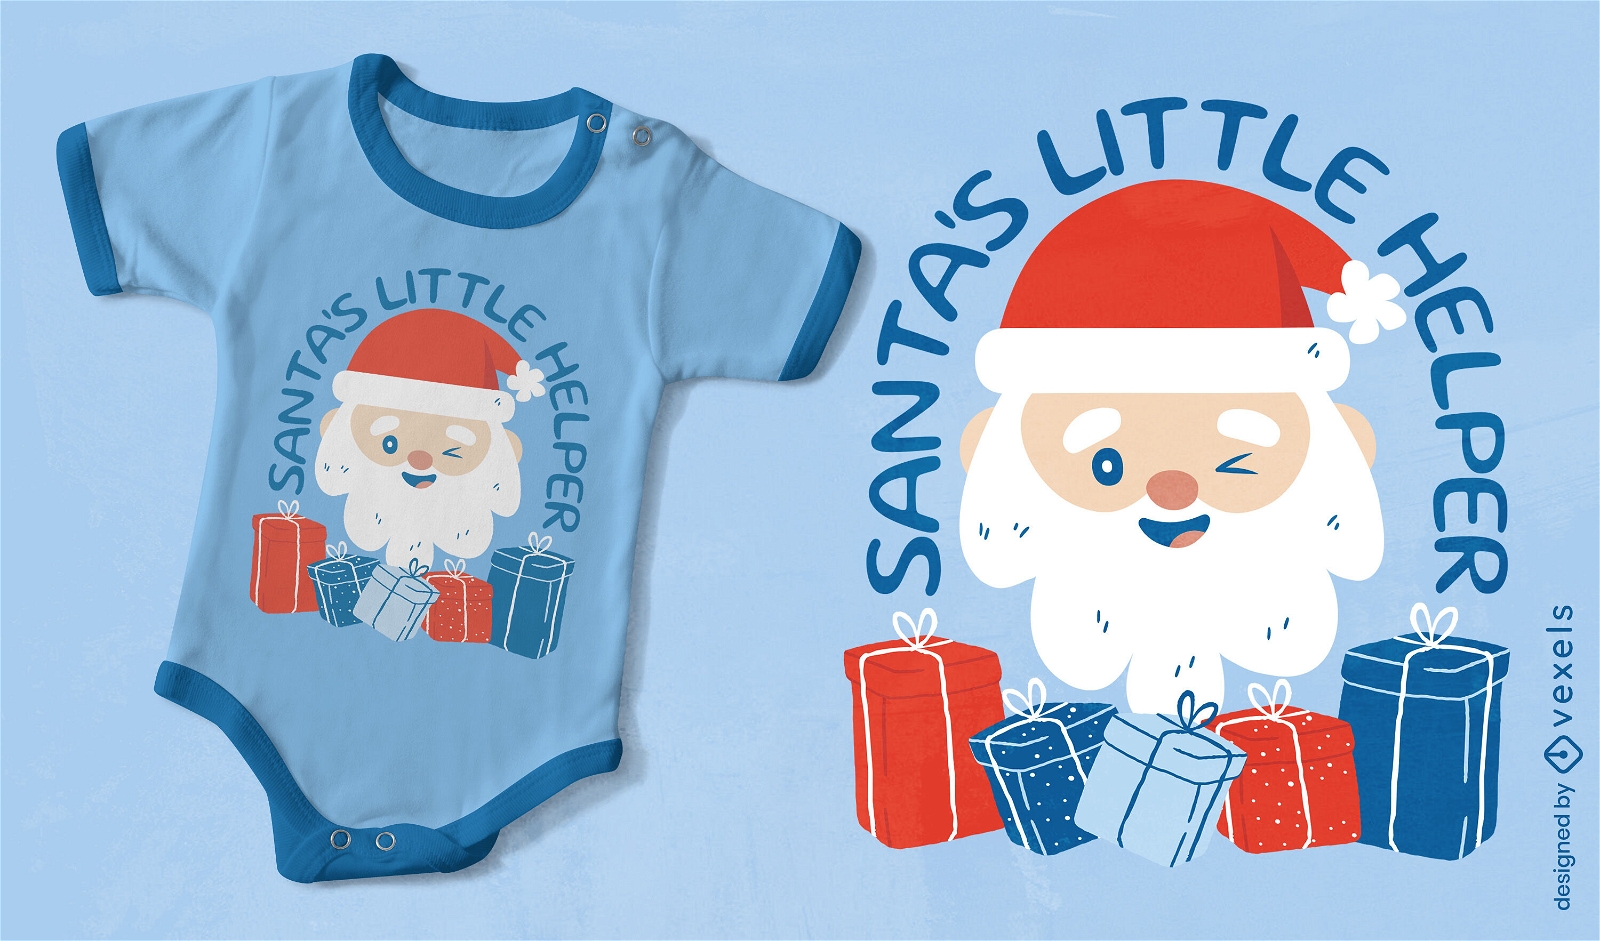 Santa's little helper t-shirt design